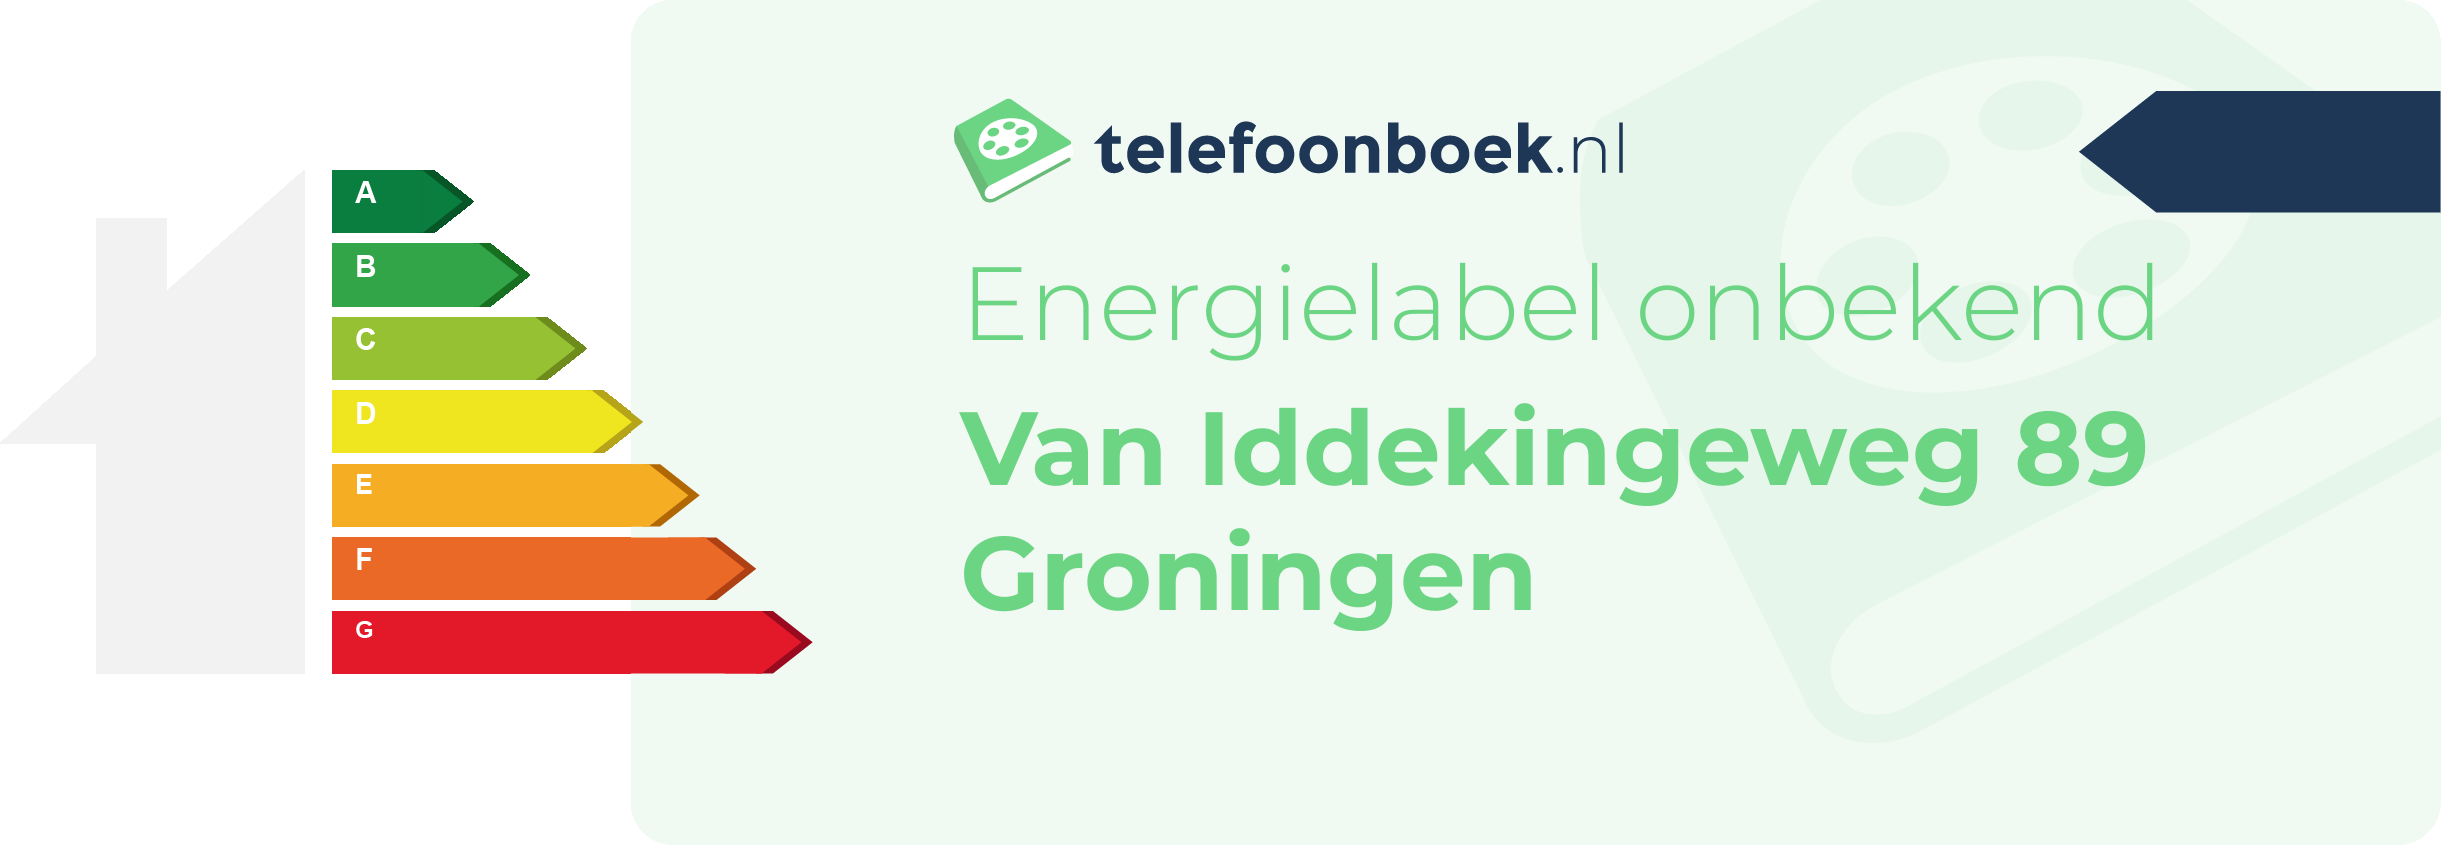 Energielabel Van Iddekingeweg 89 Groningen